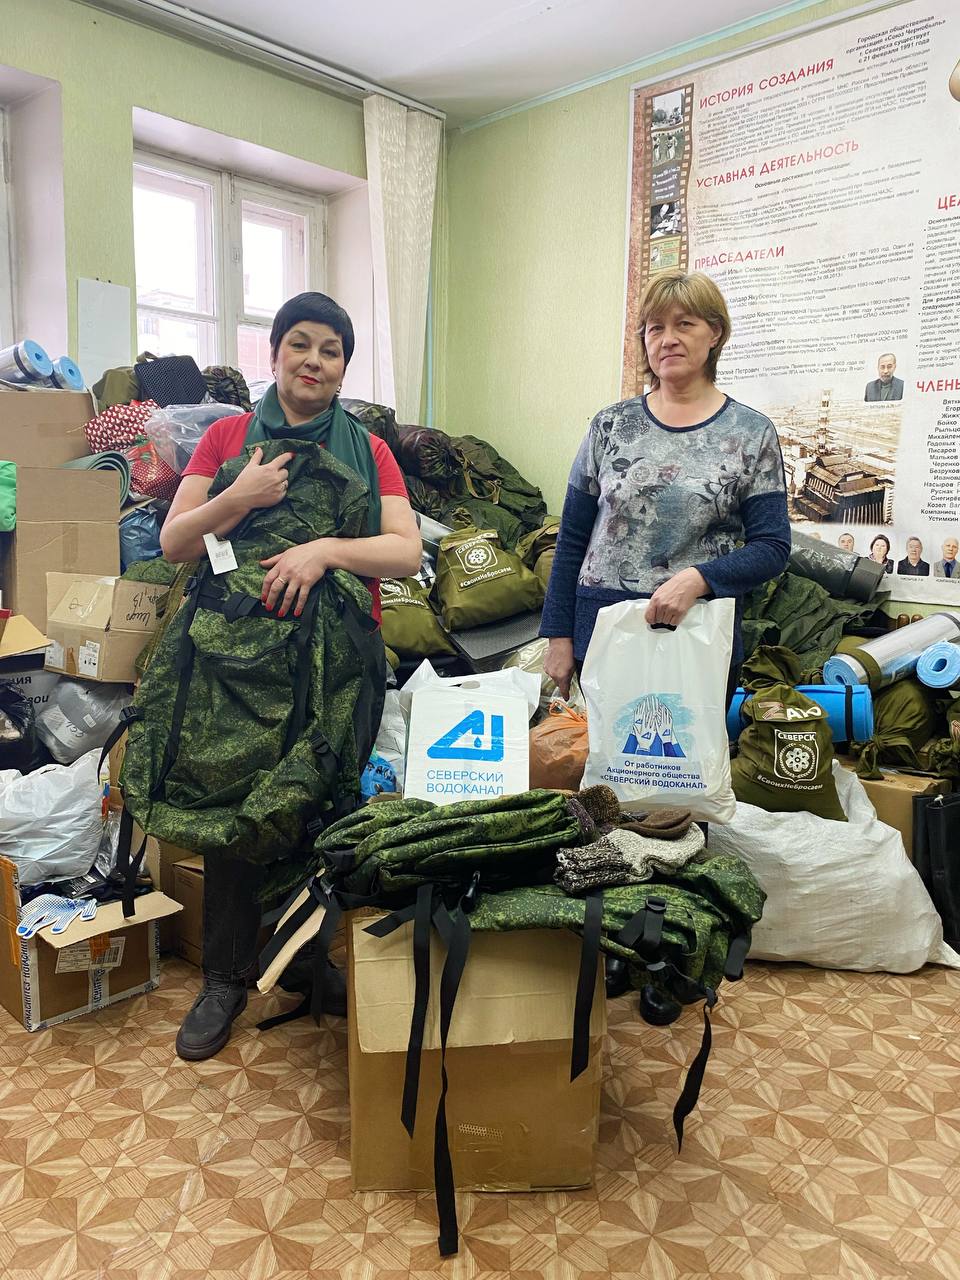 Коллектив «Северского водоканала»  присоединился к акции по сбору гуманитарной помощи  в поддержку участников специальной военной операции